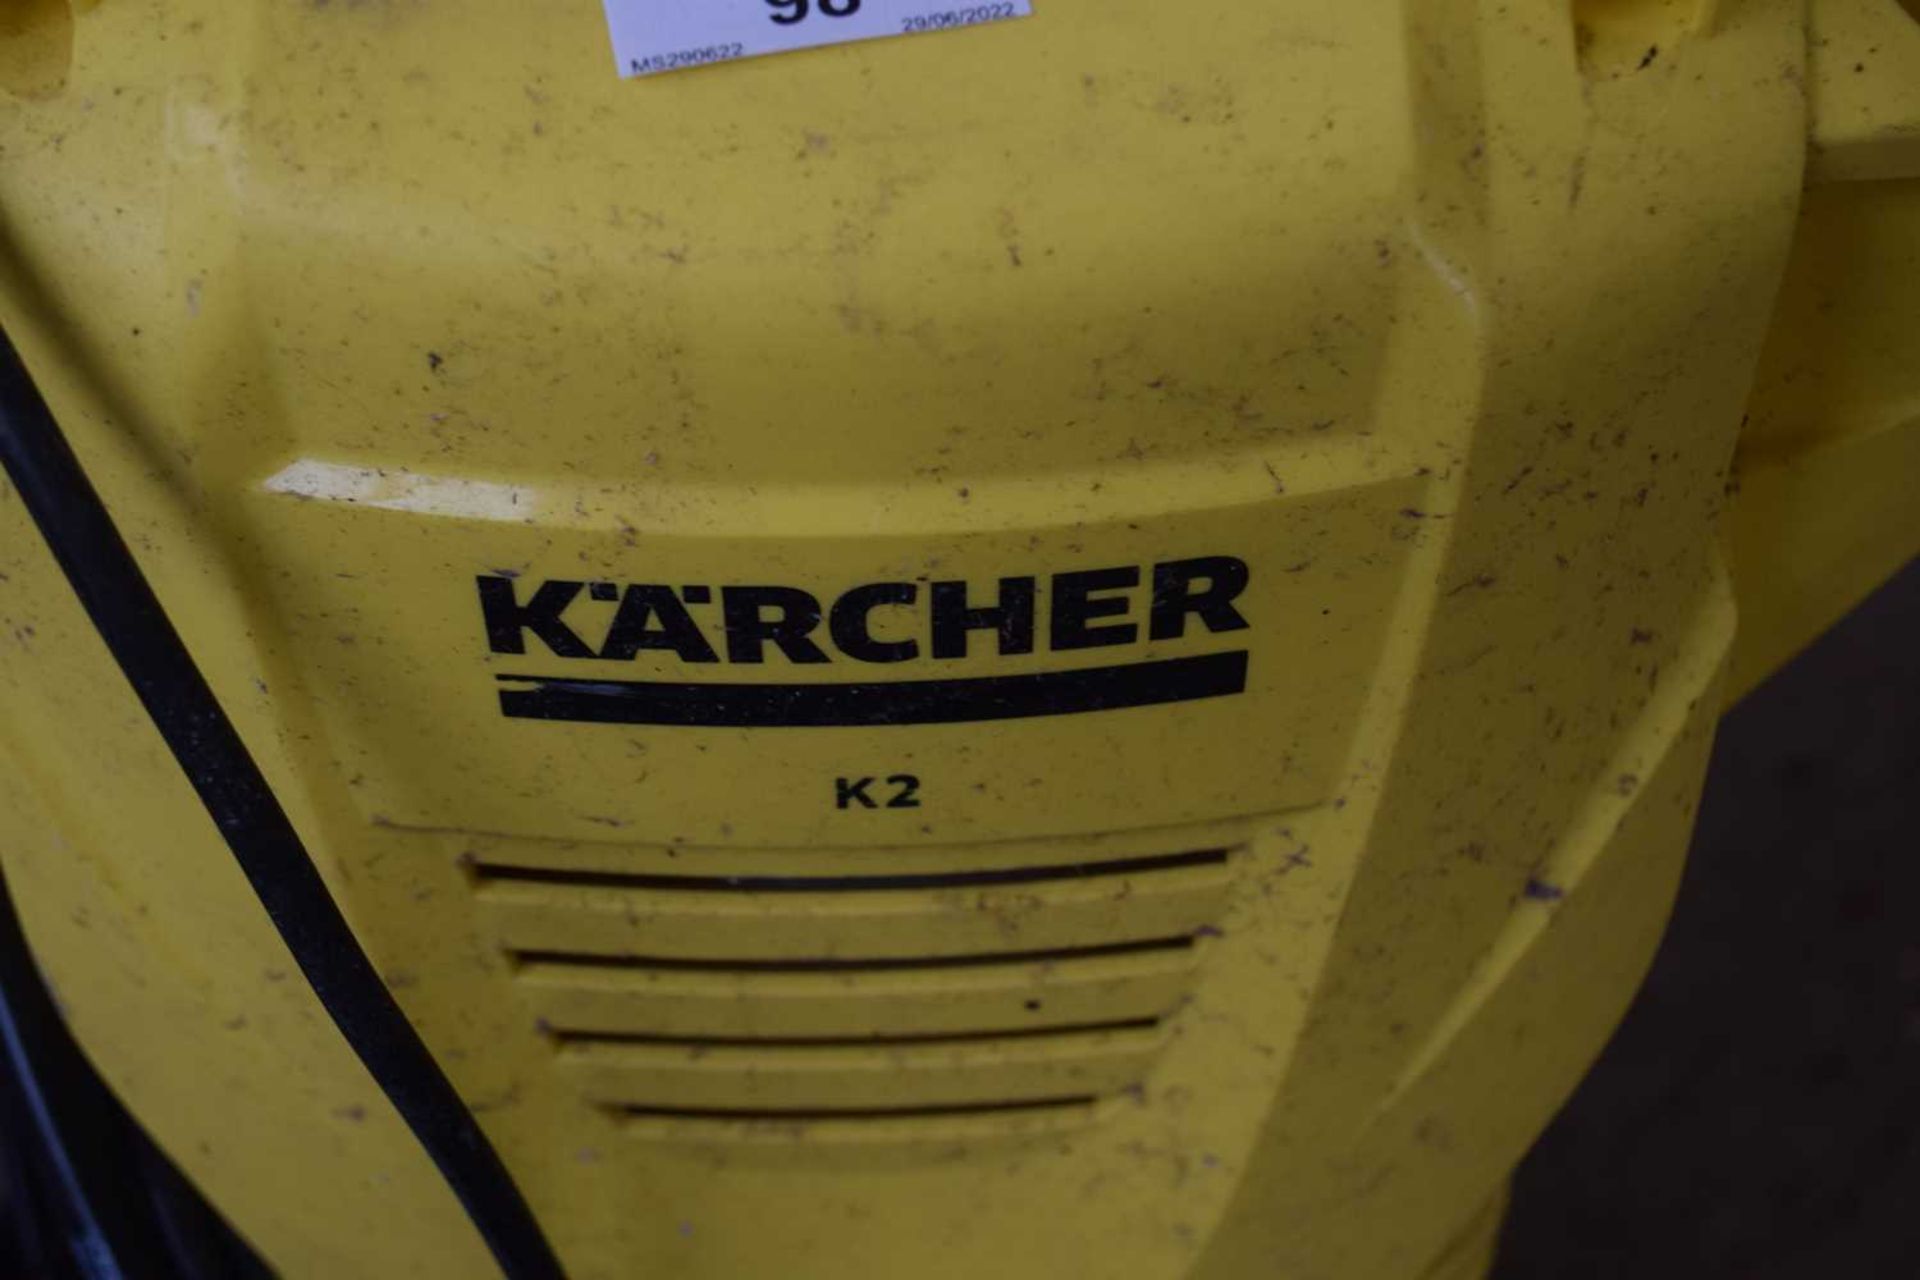 Karcher K2 pressure washer - Image 2 of 2